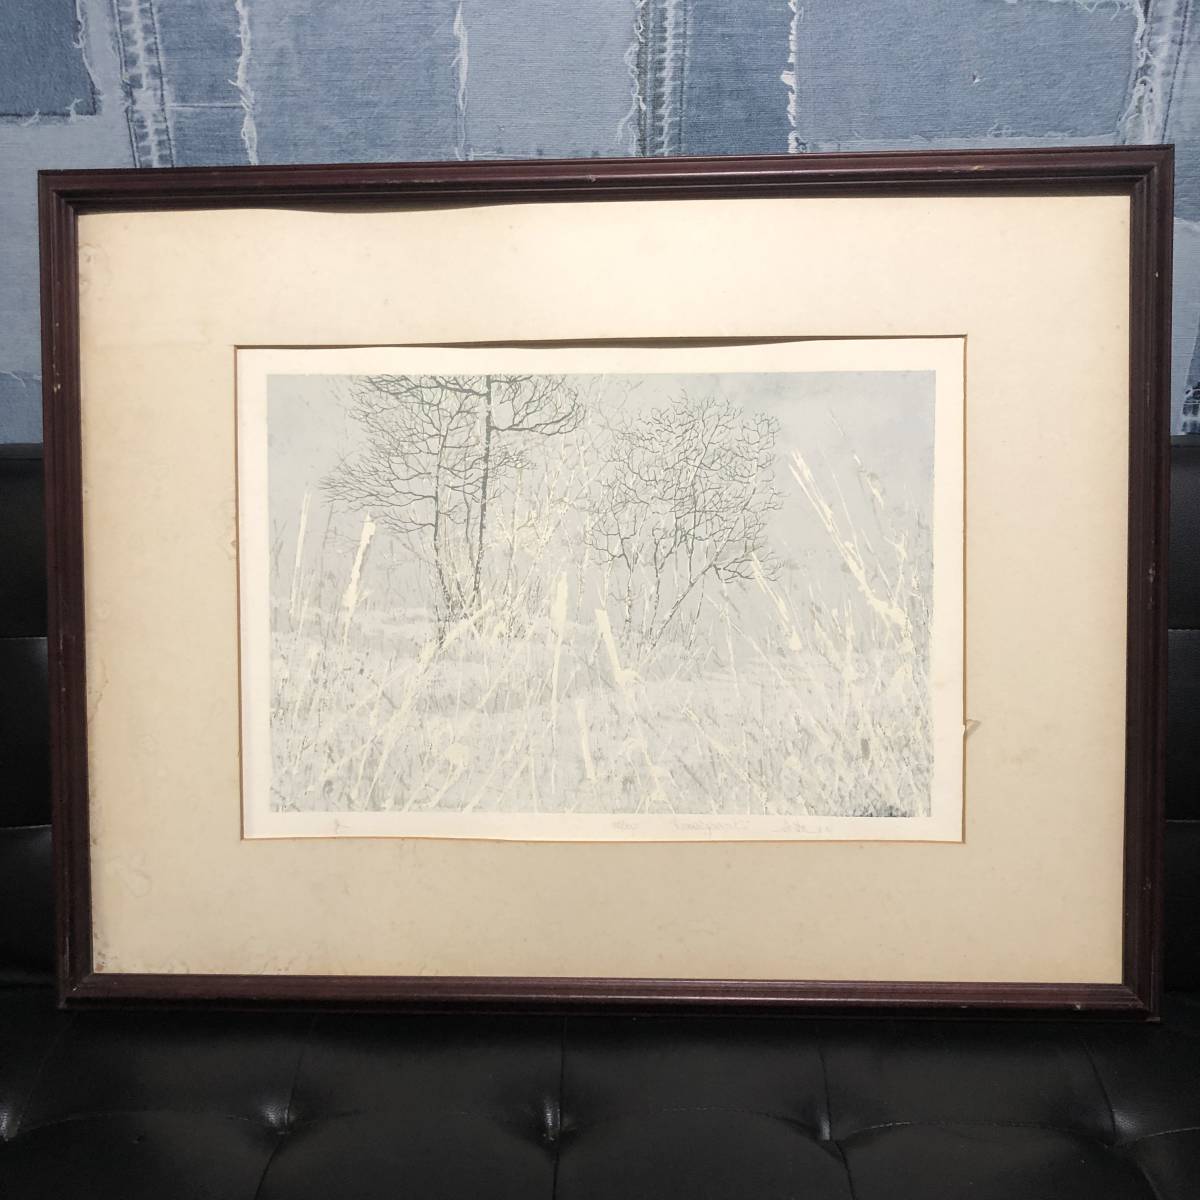 絵画美術リトグラフkohei gemenk作冬の森林風景185/200 鉛筆直筆